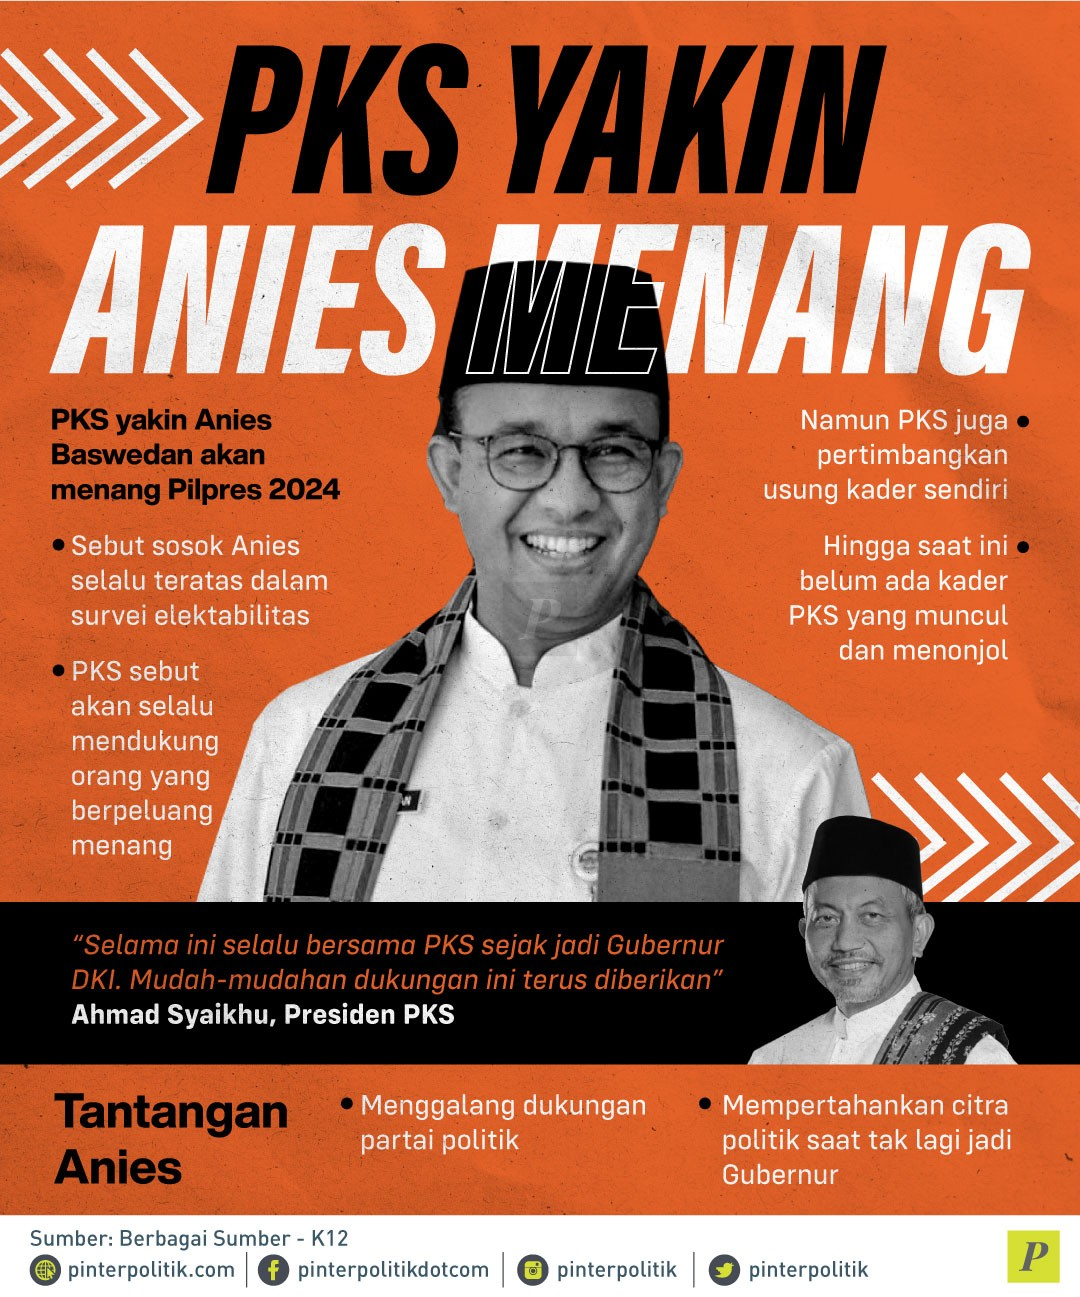 PKS Yakin Anies Menang